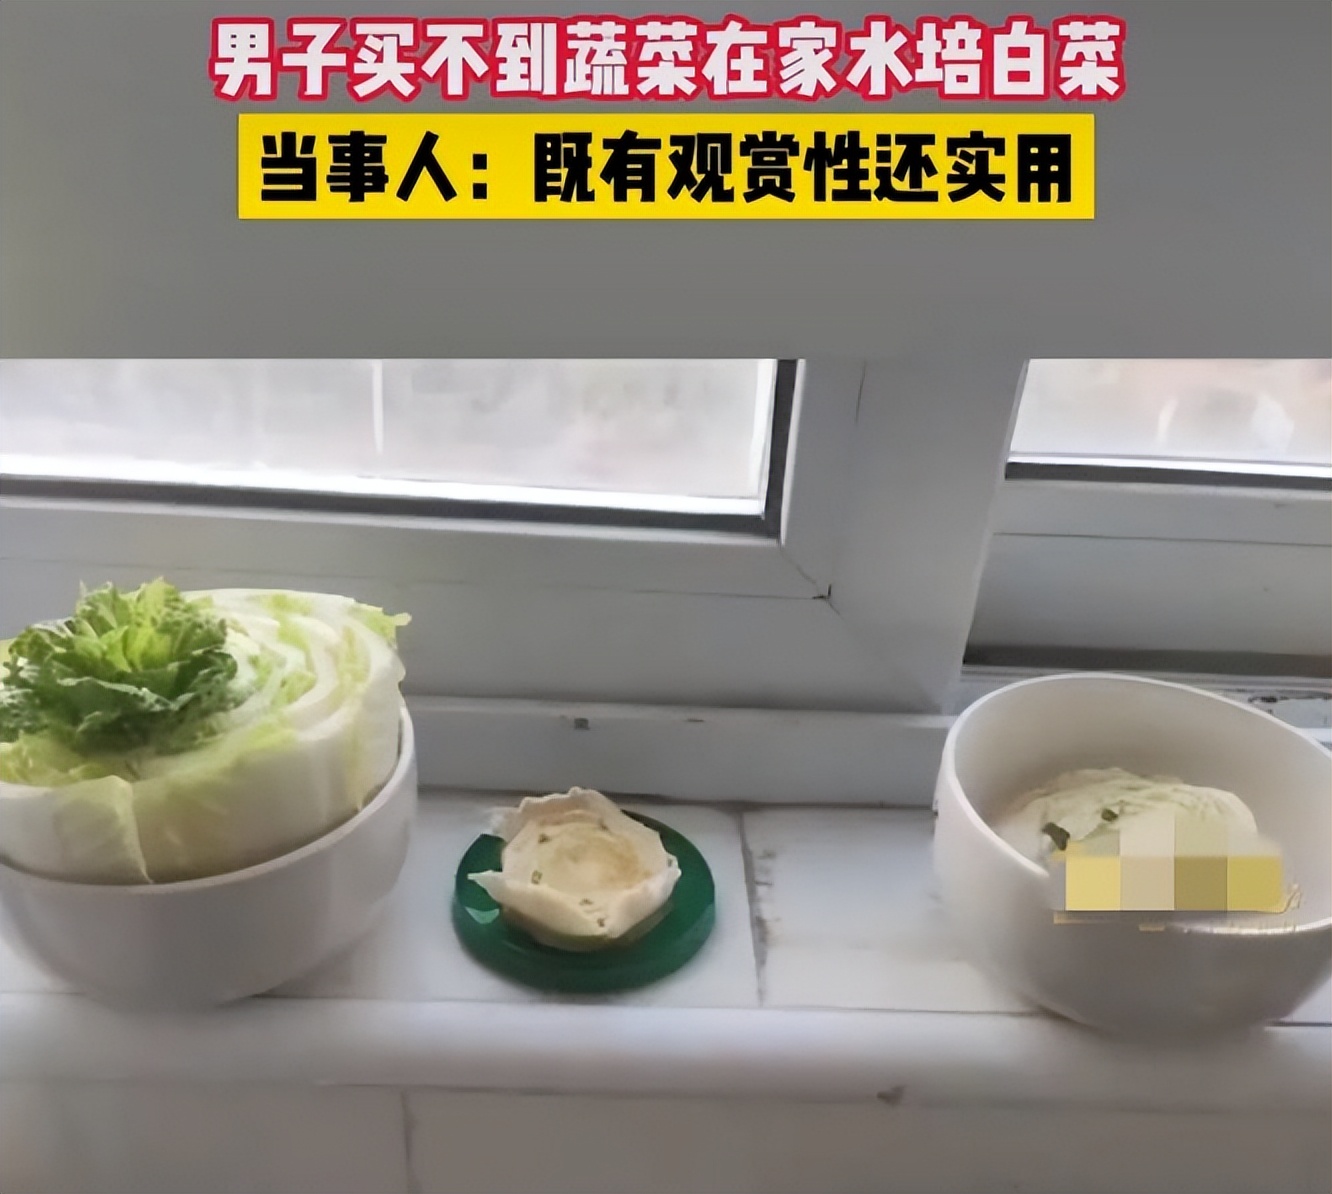 上海一男子买不到菜在家水培白菜 网友看到后纷纷晒出种的蔬菜